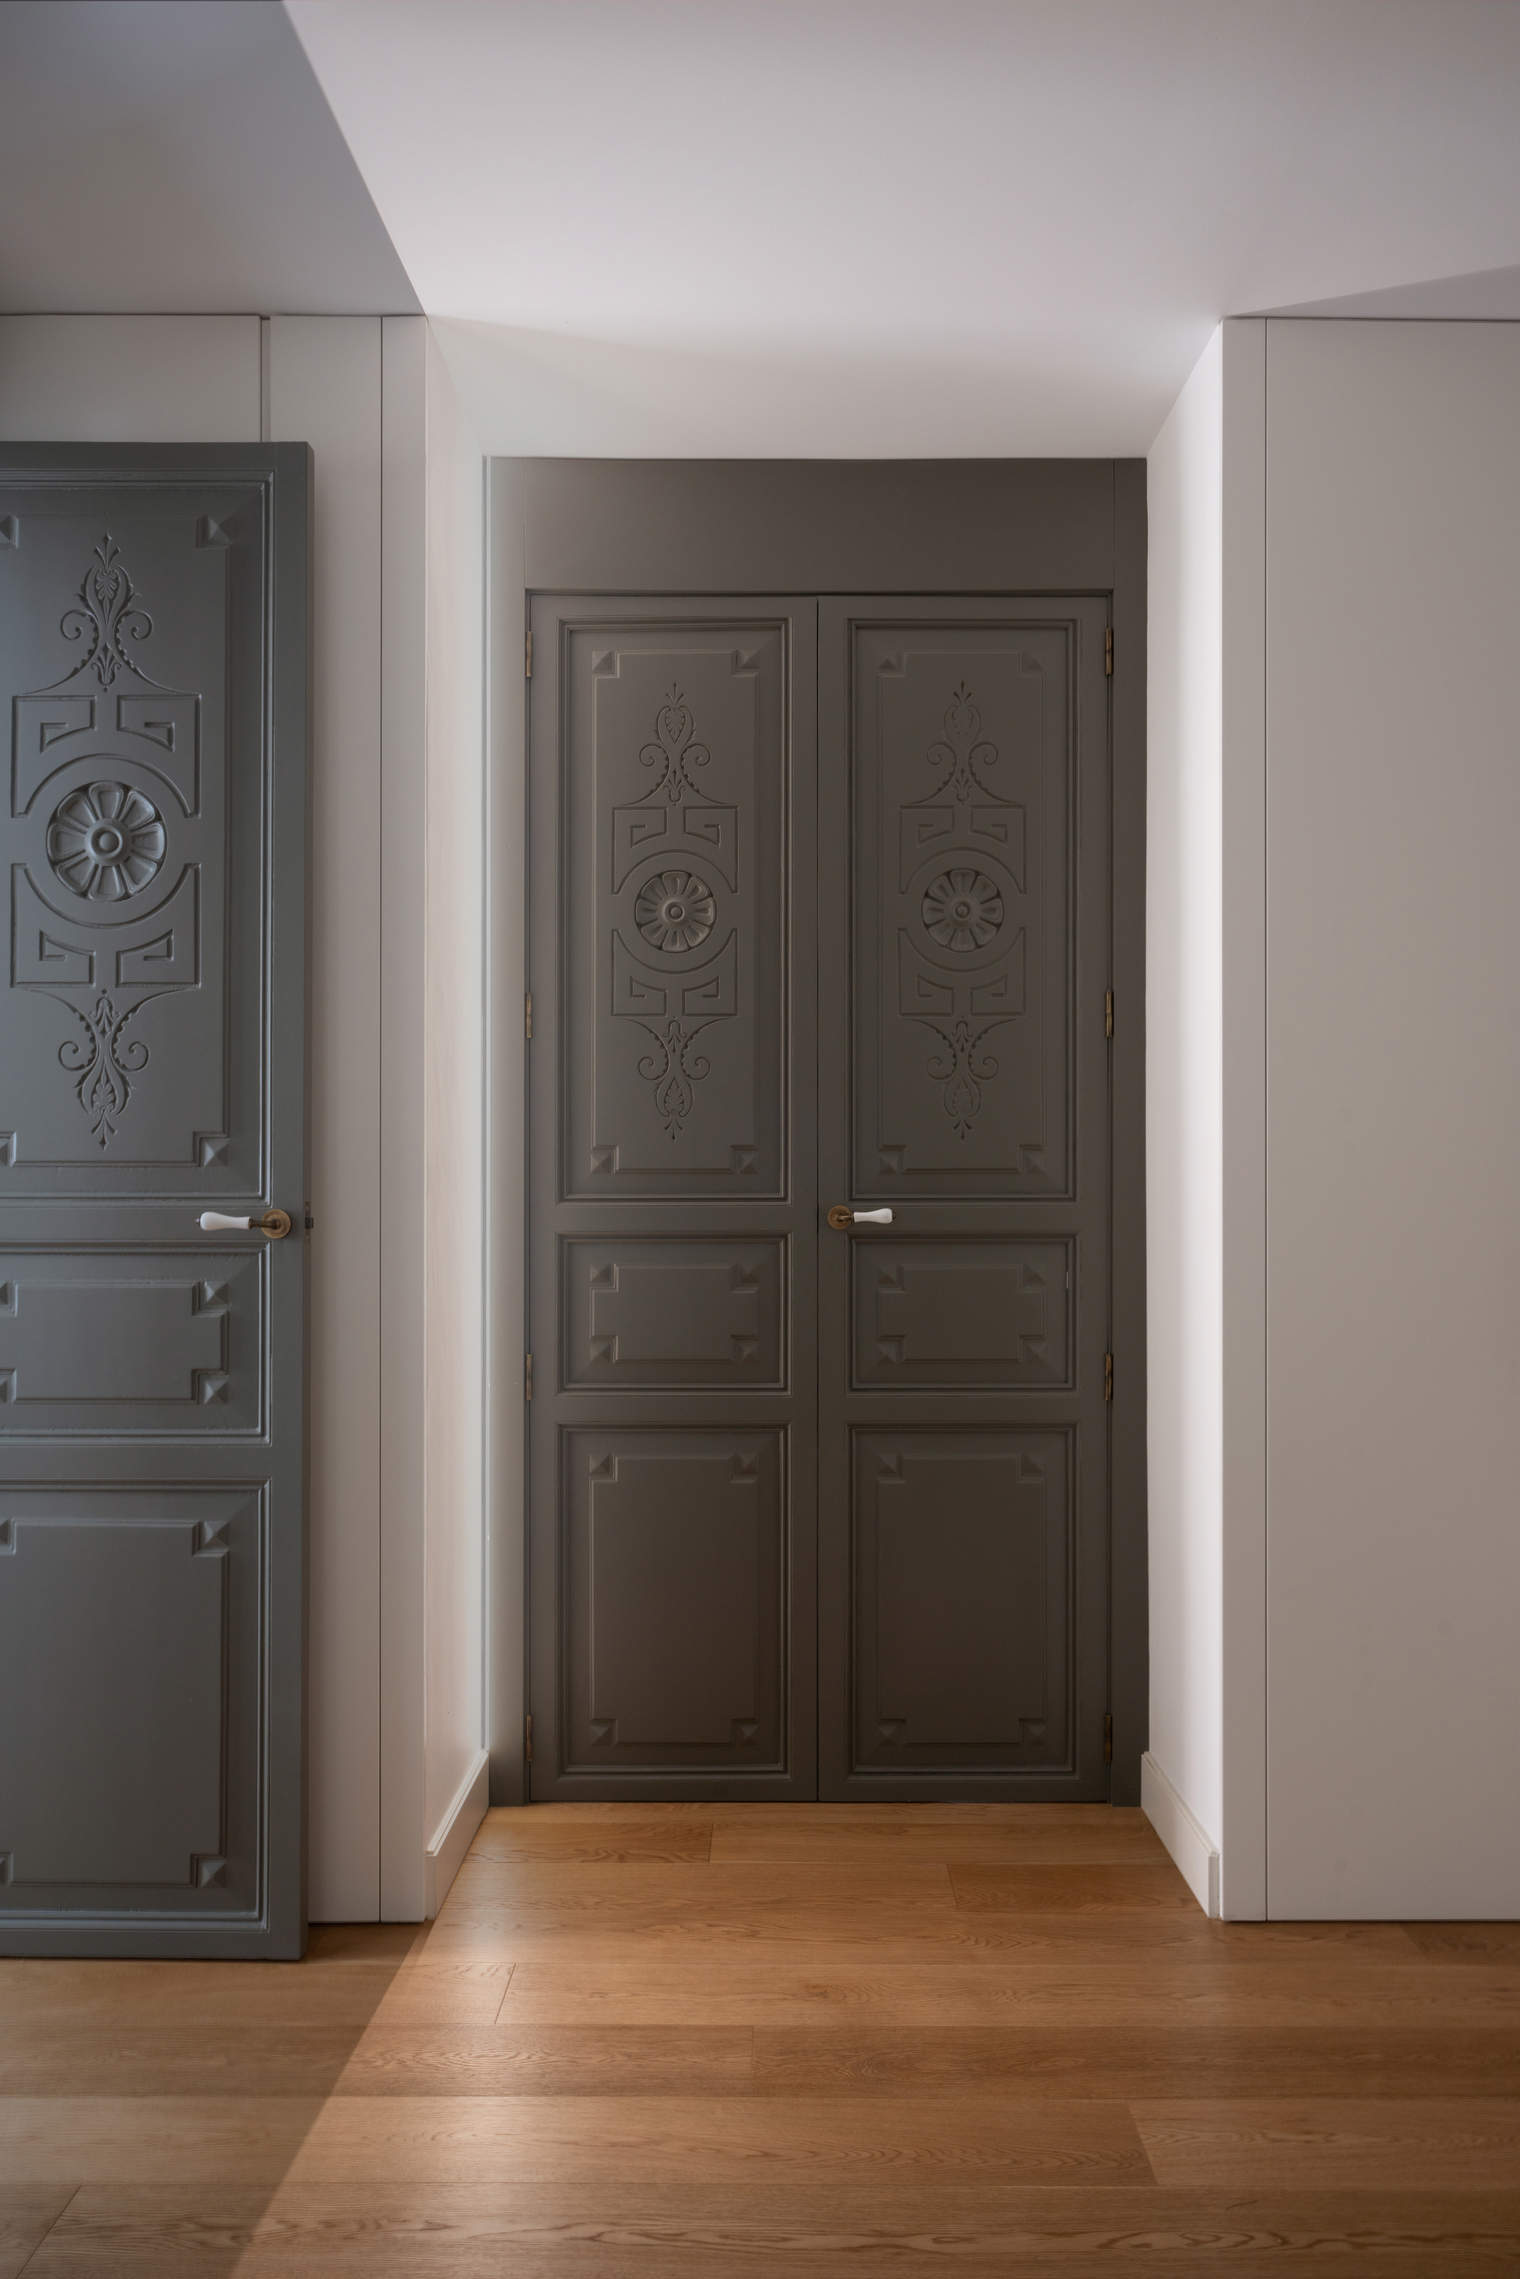 Las puertas han cambiado a un gris marengo en lugar del blanco preexistente.